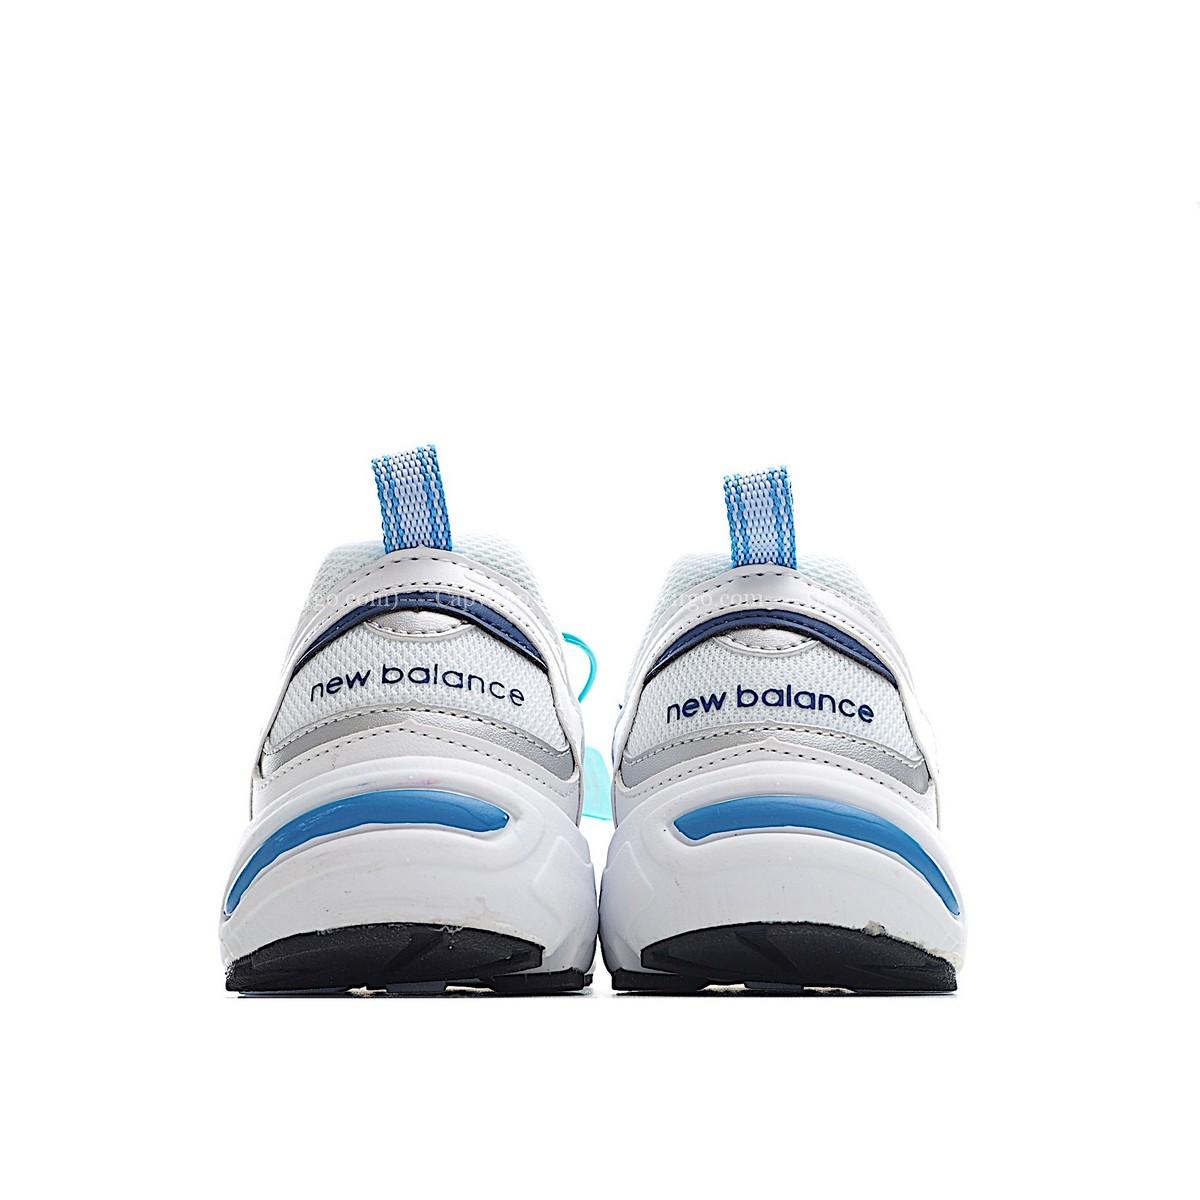 Giày chạy bộ trẻ em newbalance 878 - NB878 màu trắng xanh